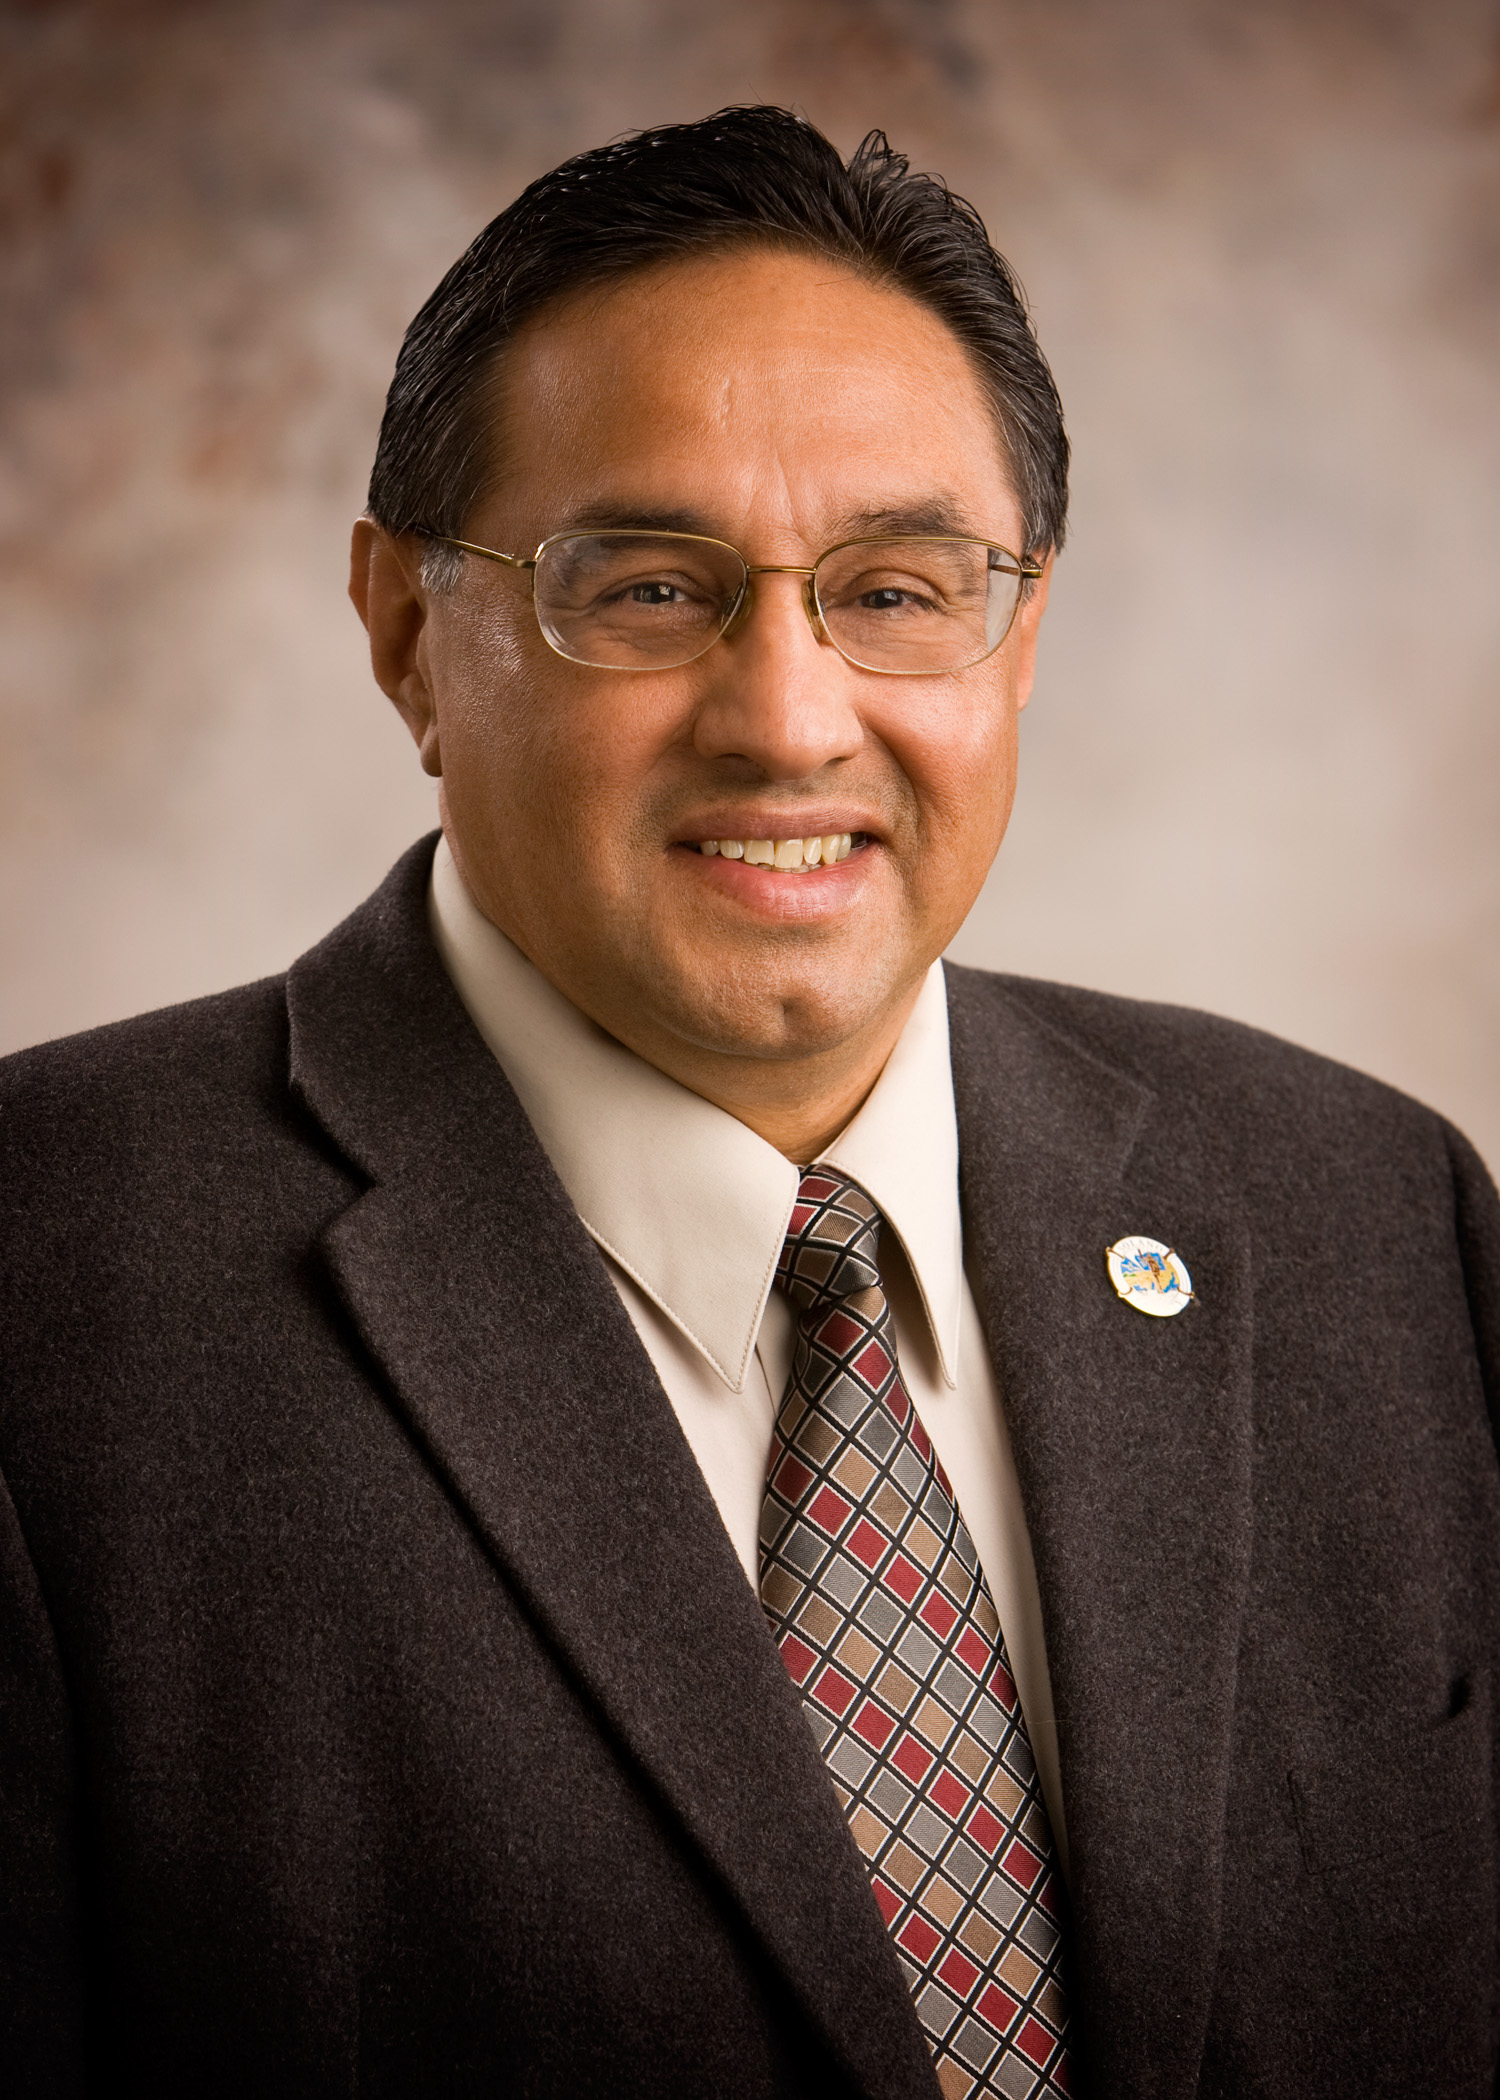 Solano County Supervisor John Vasquez